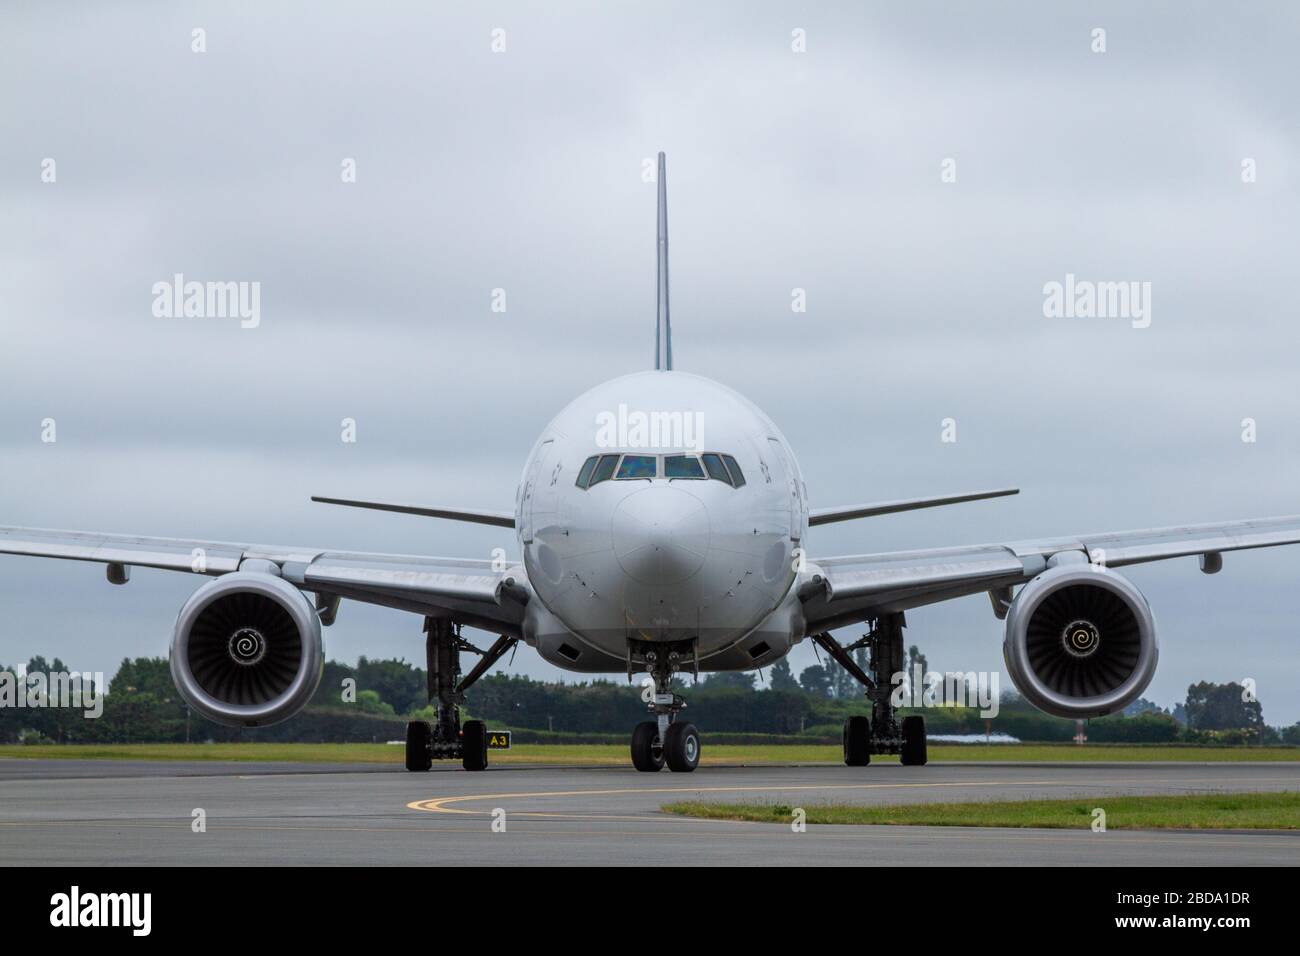 La vista frontal perfectamente circular de un Boeing 777-200ER cuando se apaga una vía de taxis hacia la terminal Foto de stock